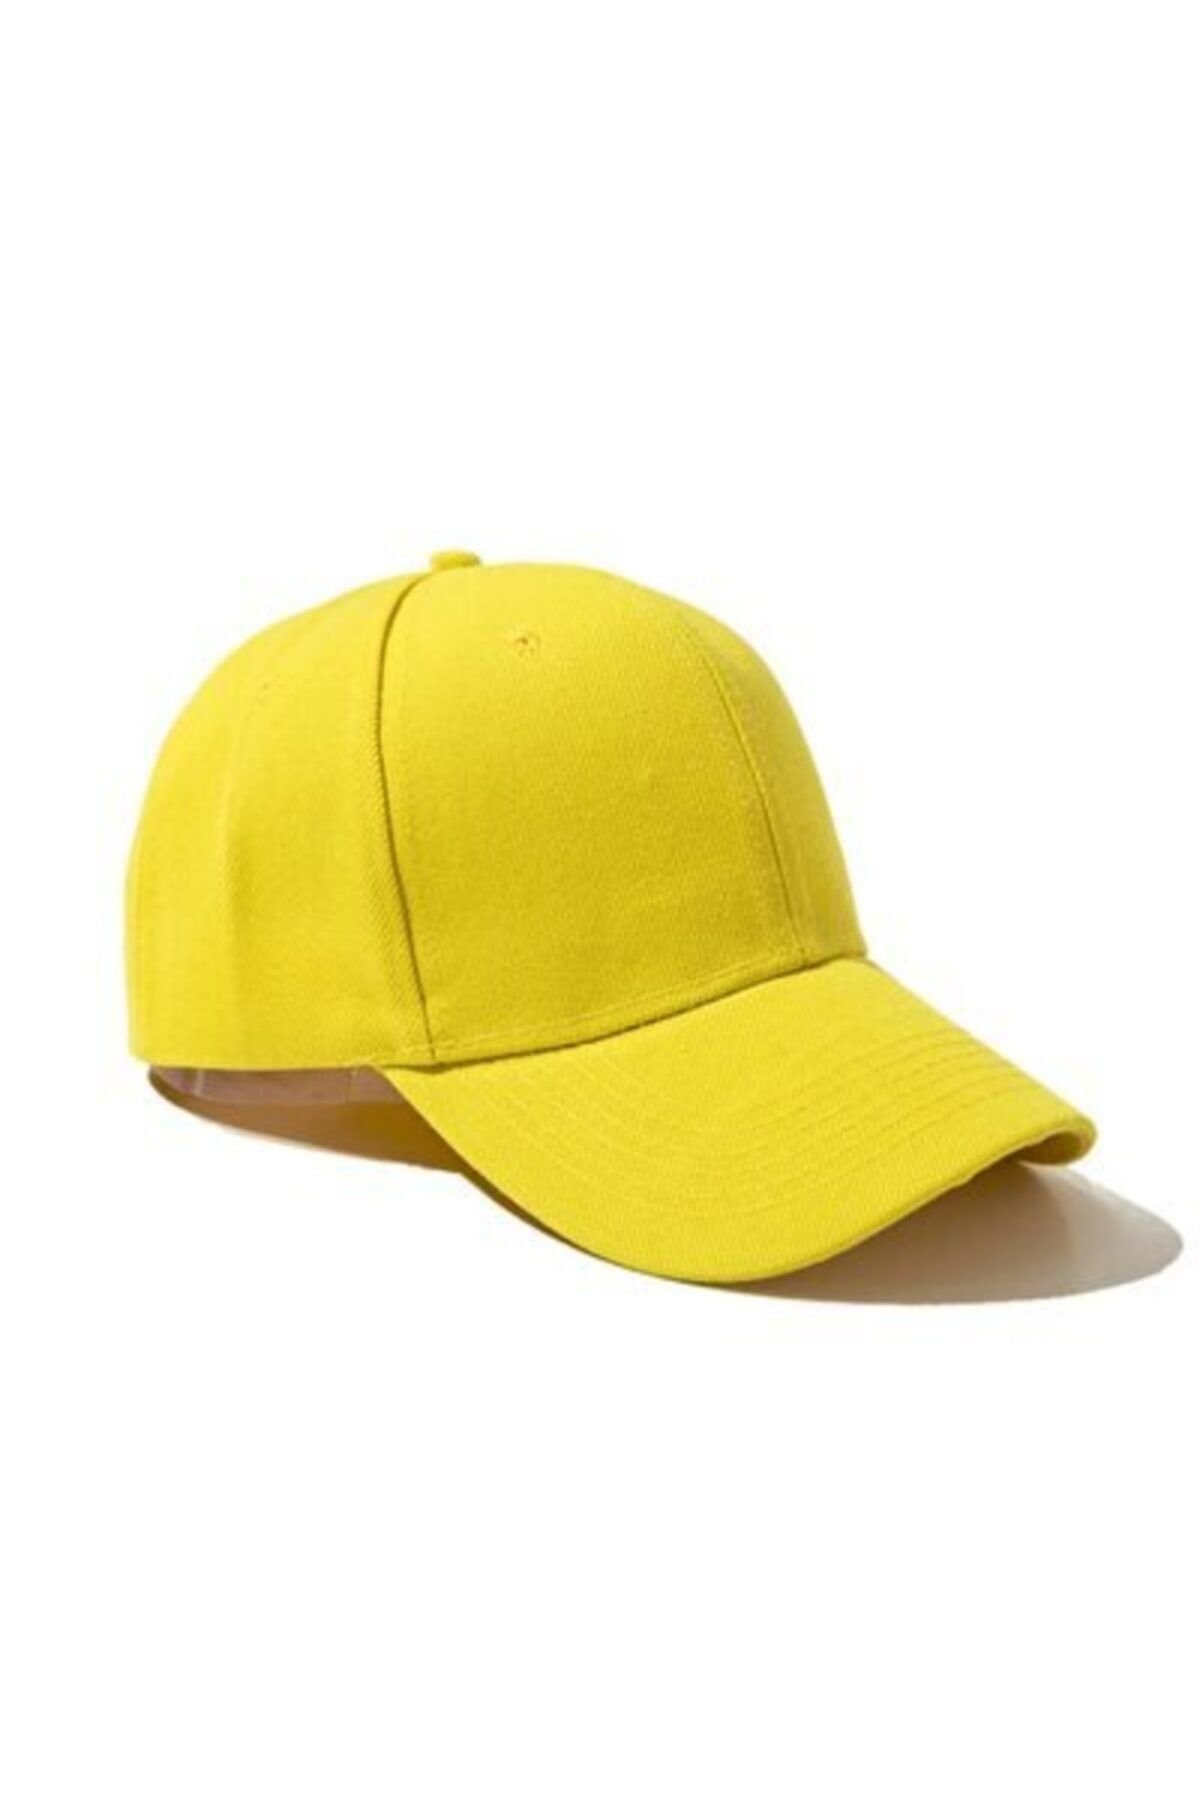 BoboStores Unisex Ayarlanabilir Şapka